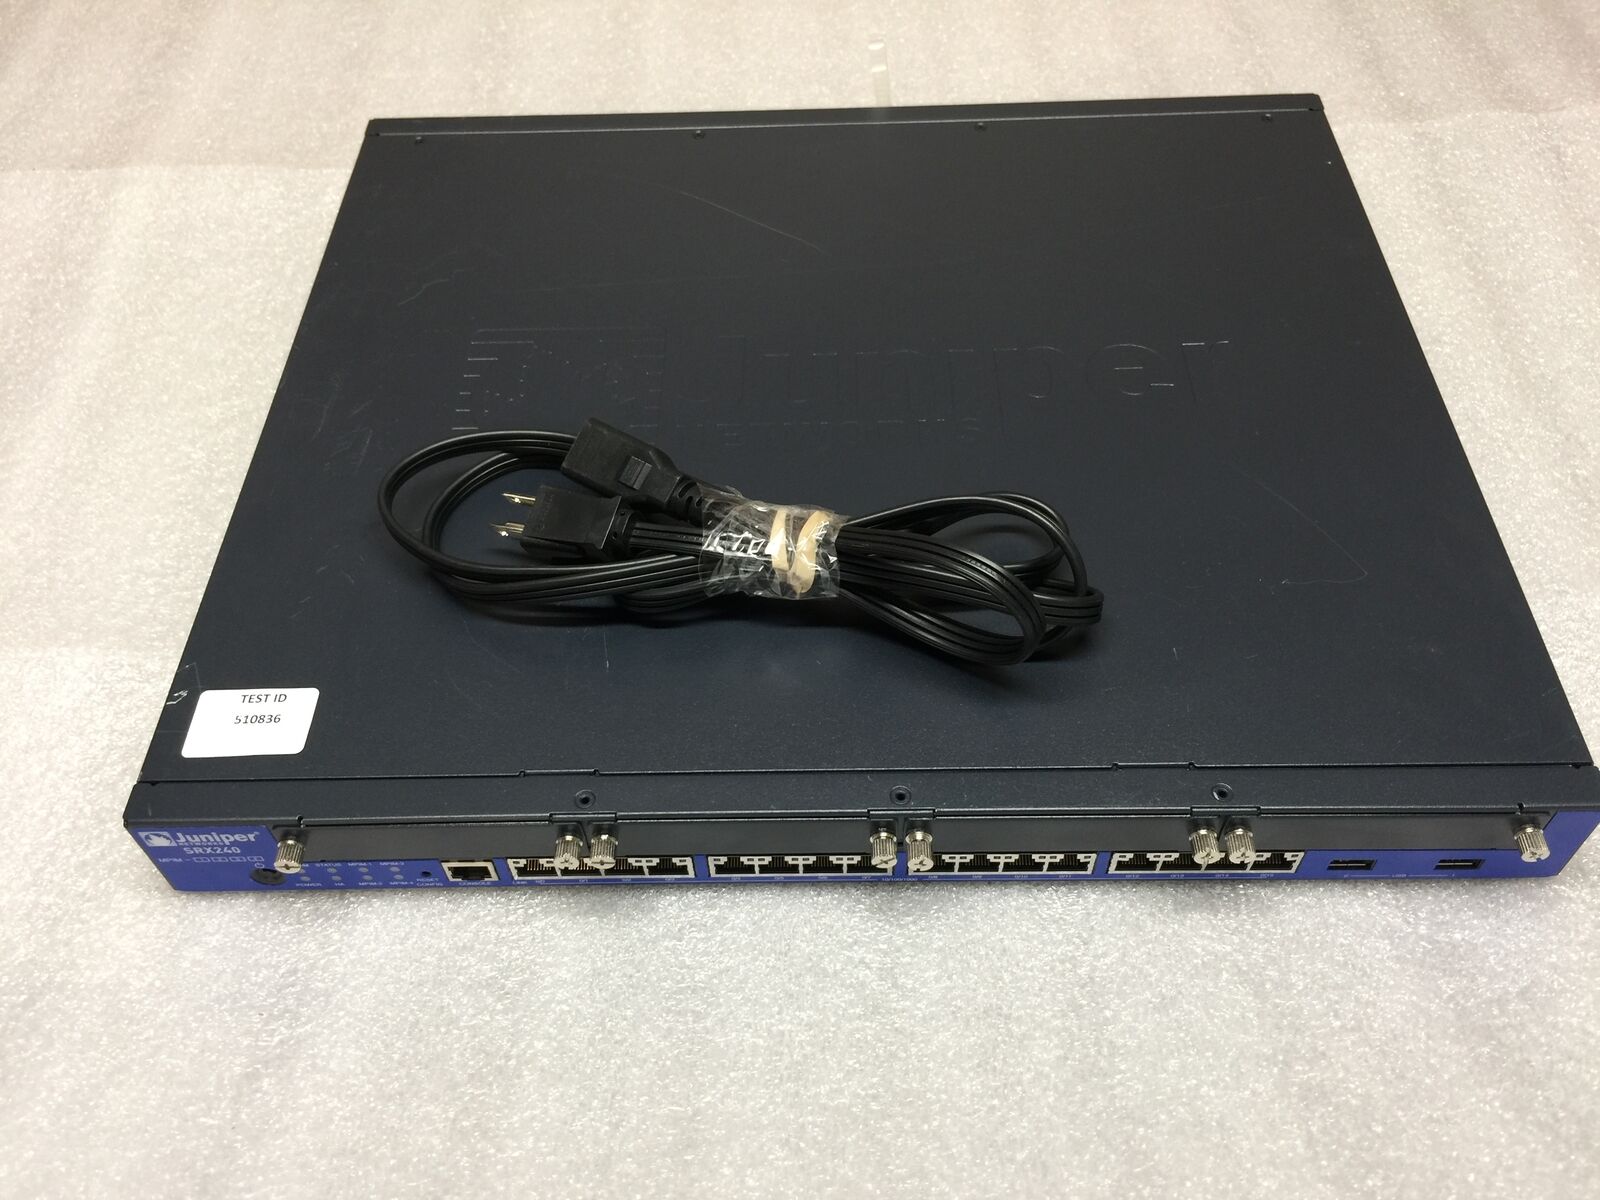 Juniper SRX240 SRX240H216 Port Gigabit Ethernet Gateway Switch - TESTED